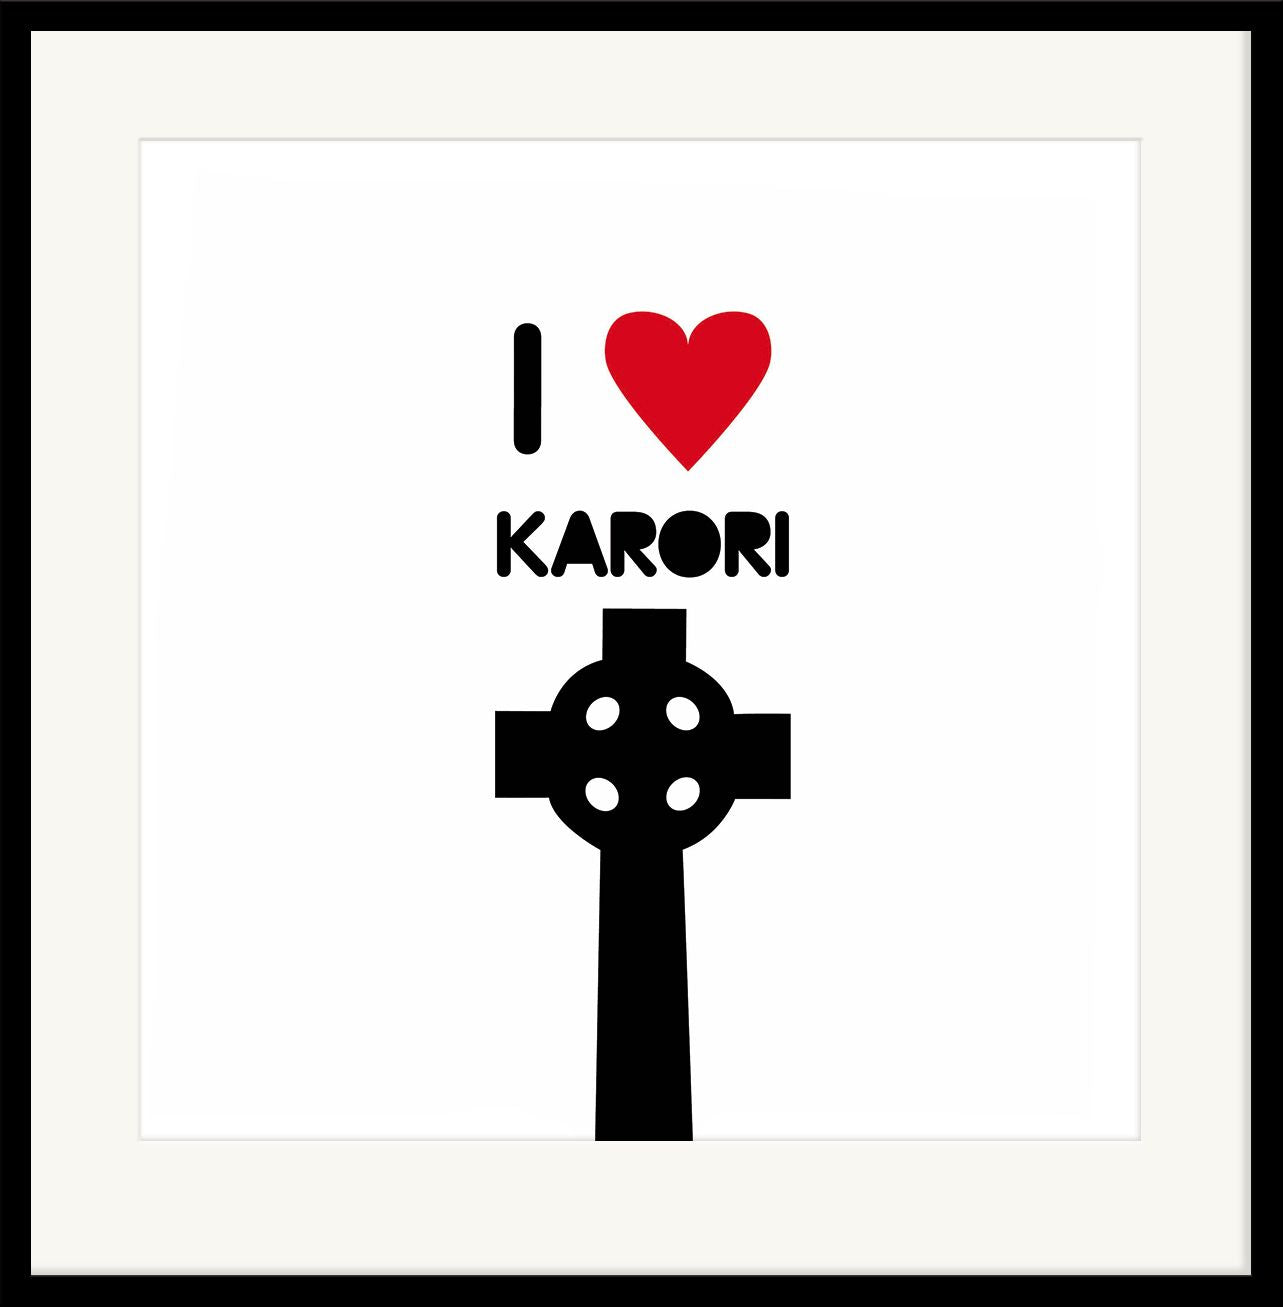 I heart Karori - Zoe Virtue